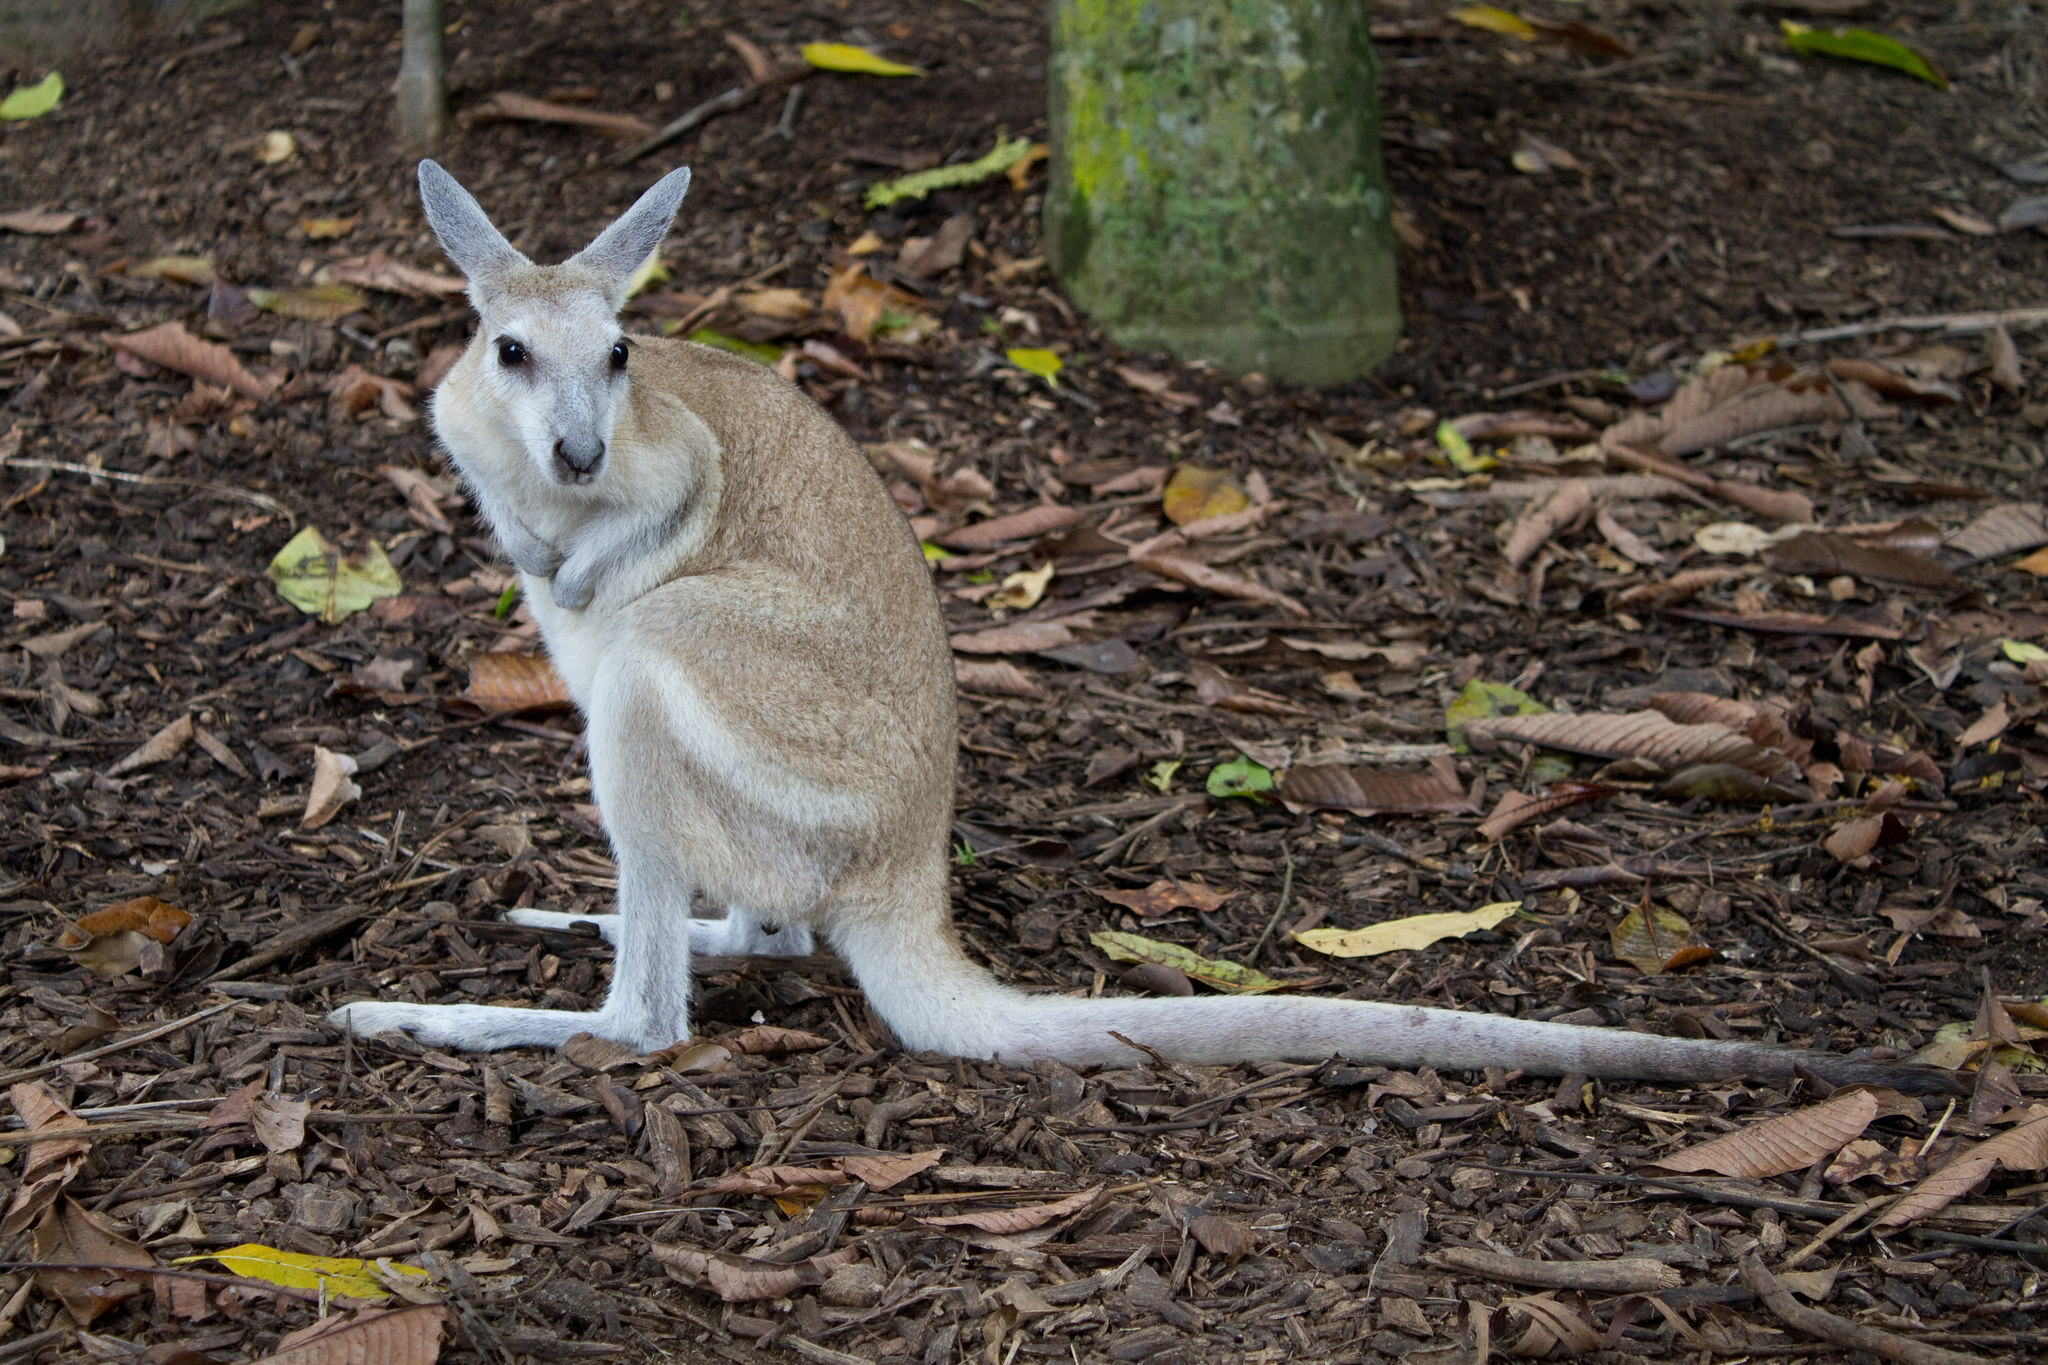 Siblicidal kookaburras, truffle-snuffling potoroos: Why did Australia's  wildlife astonish even Charles Darwin?